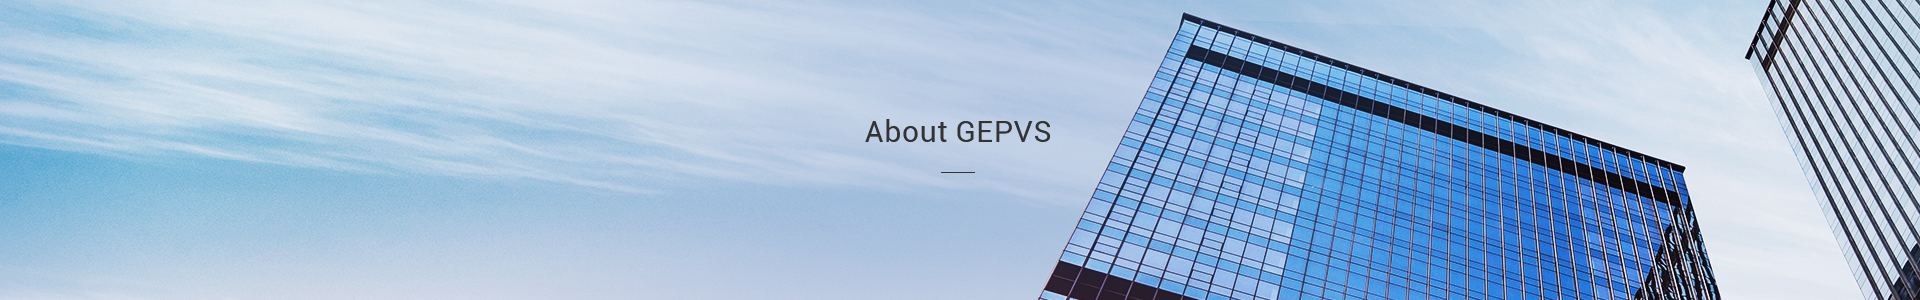 About GEPVS